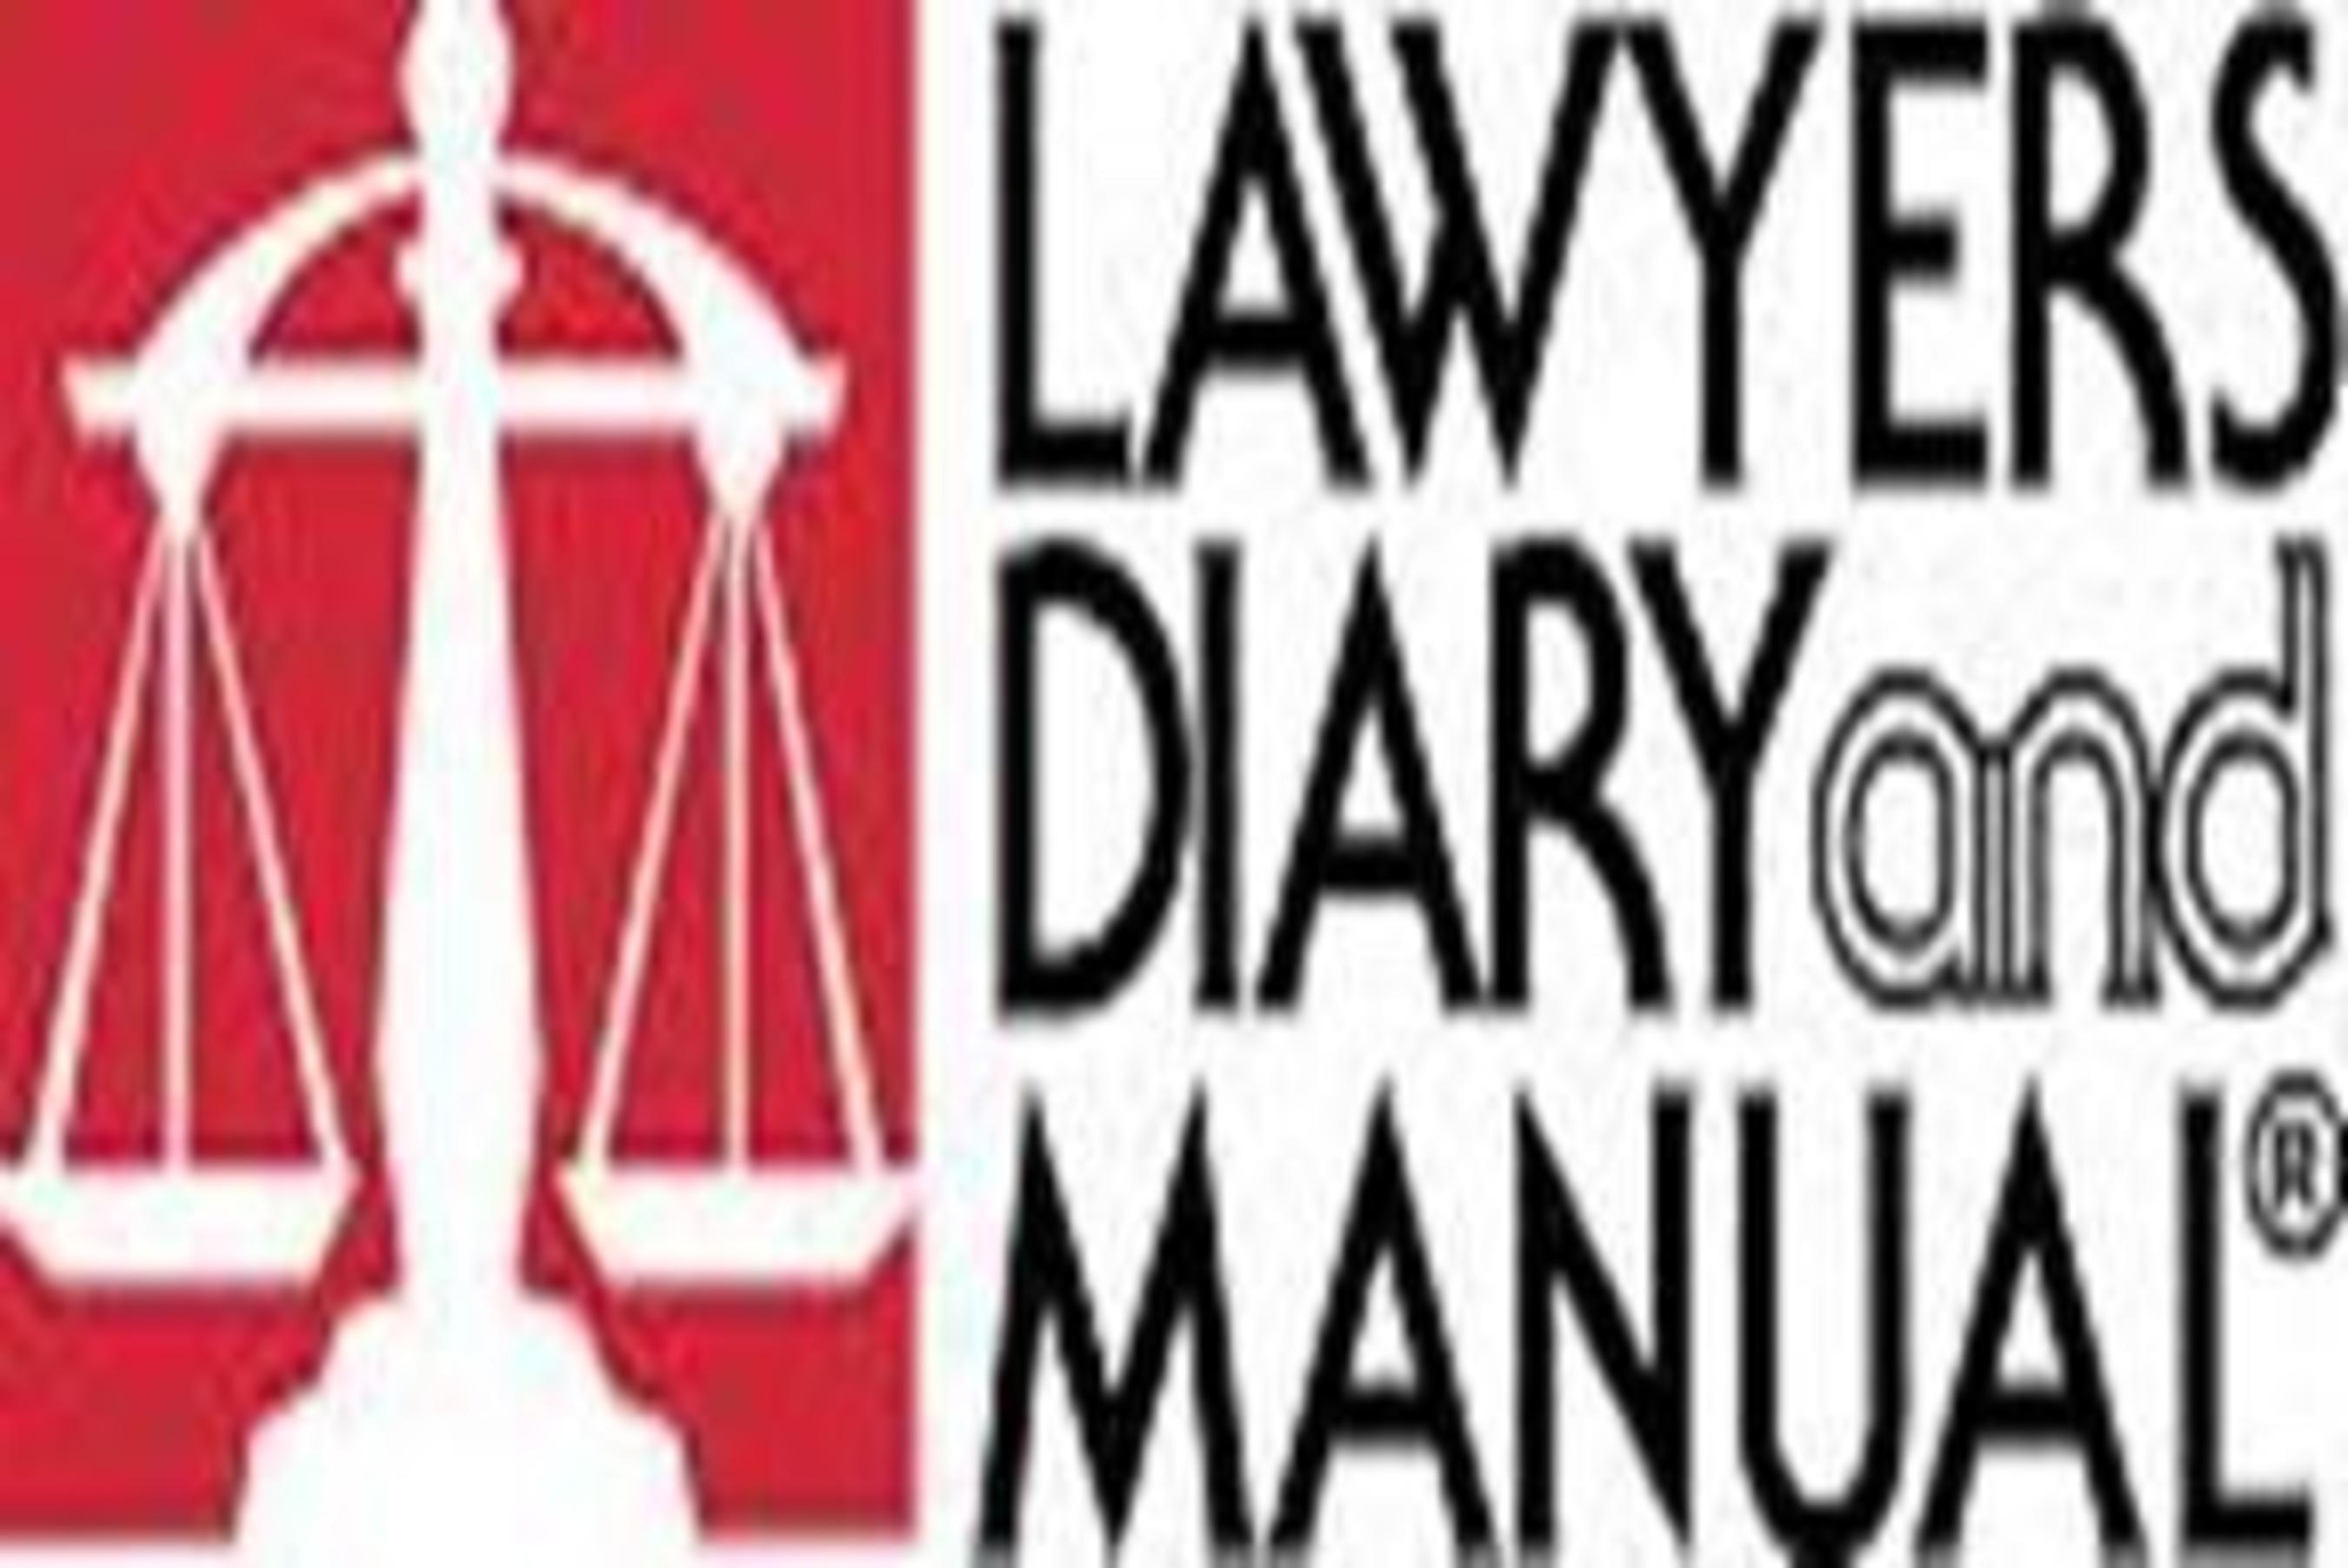 Lawyers Diary and Manual logo (PRNewsFoto/Lawyers Diary and Manual)